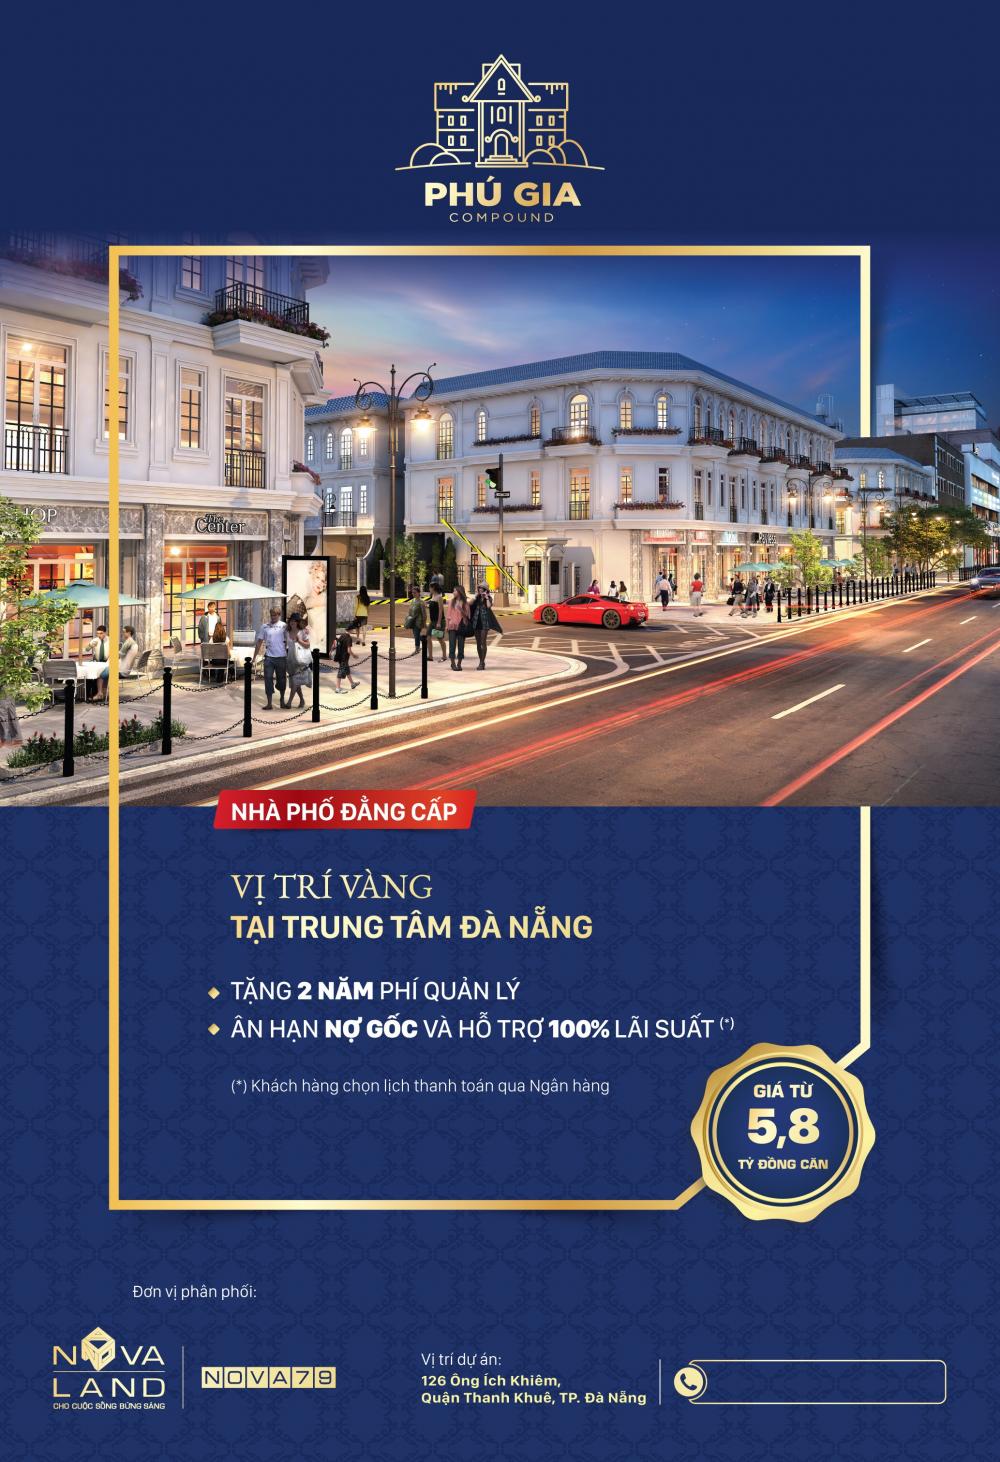 Mở bán chính thức 30 căn Phú Gia Compound nhà phố Châu Âu ngay trung tâm Đà Nẵng